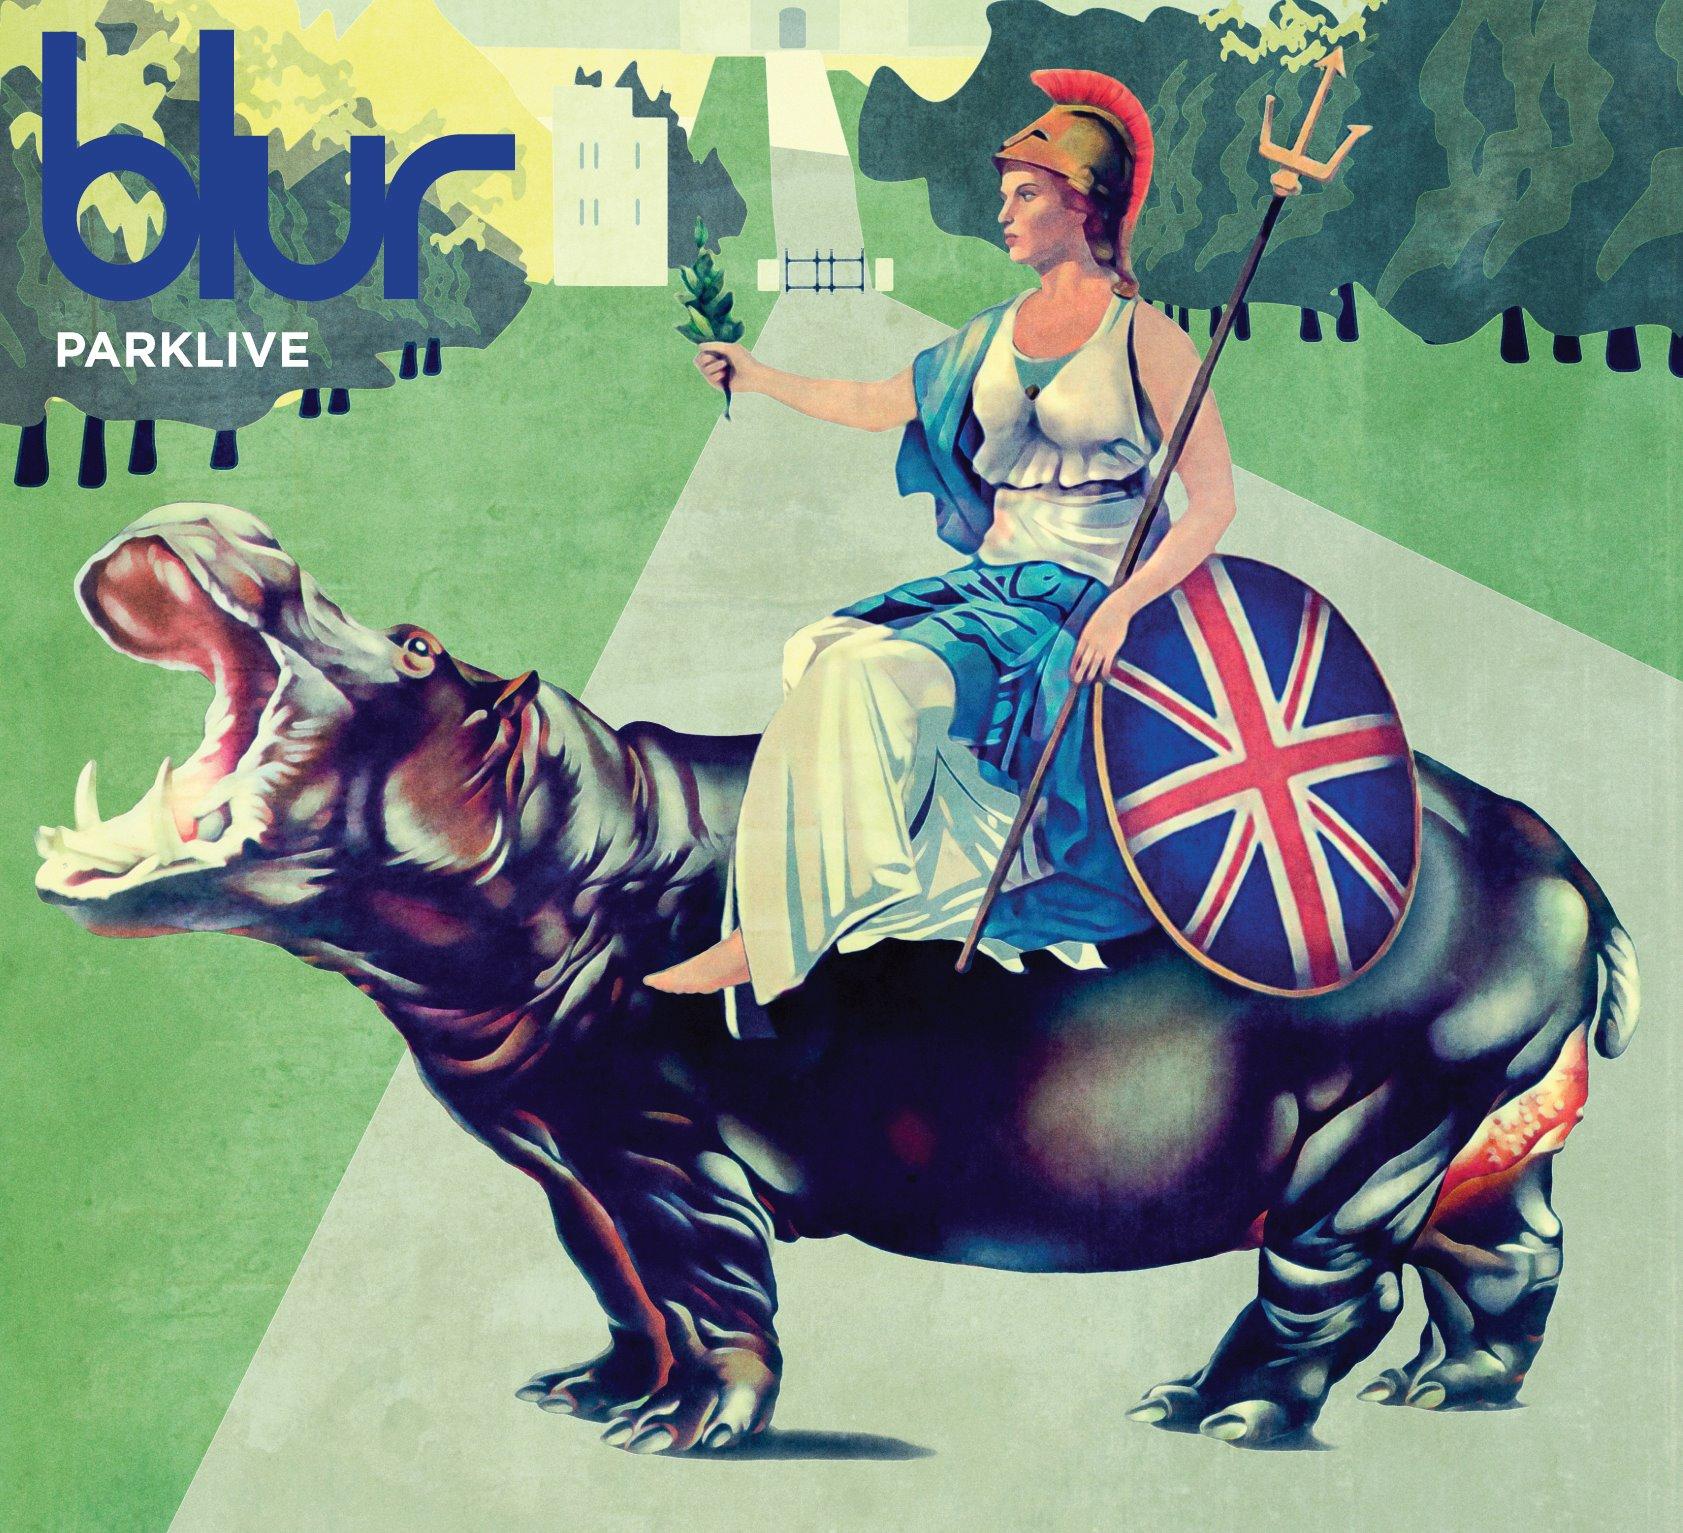 Parklive de Blur, enfin disponible !